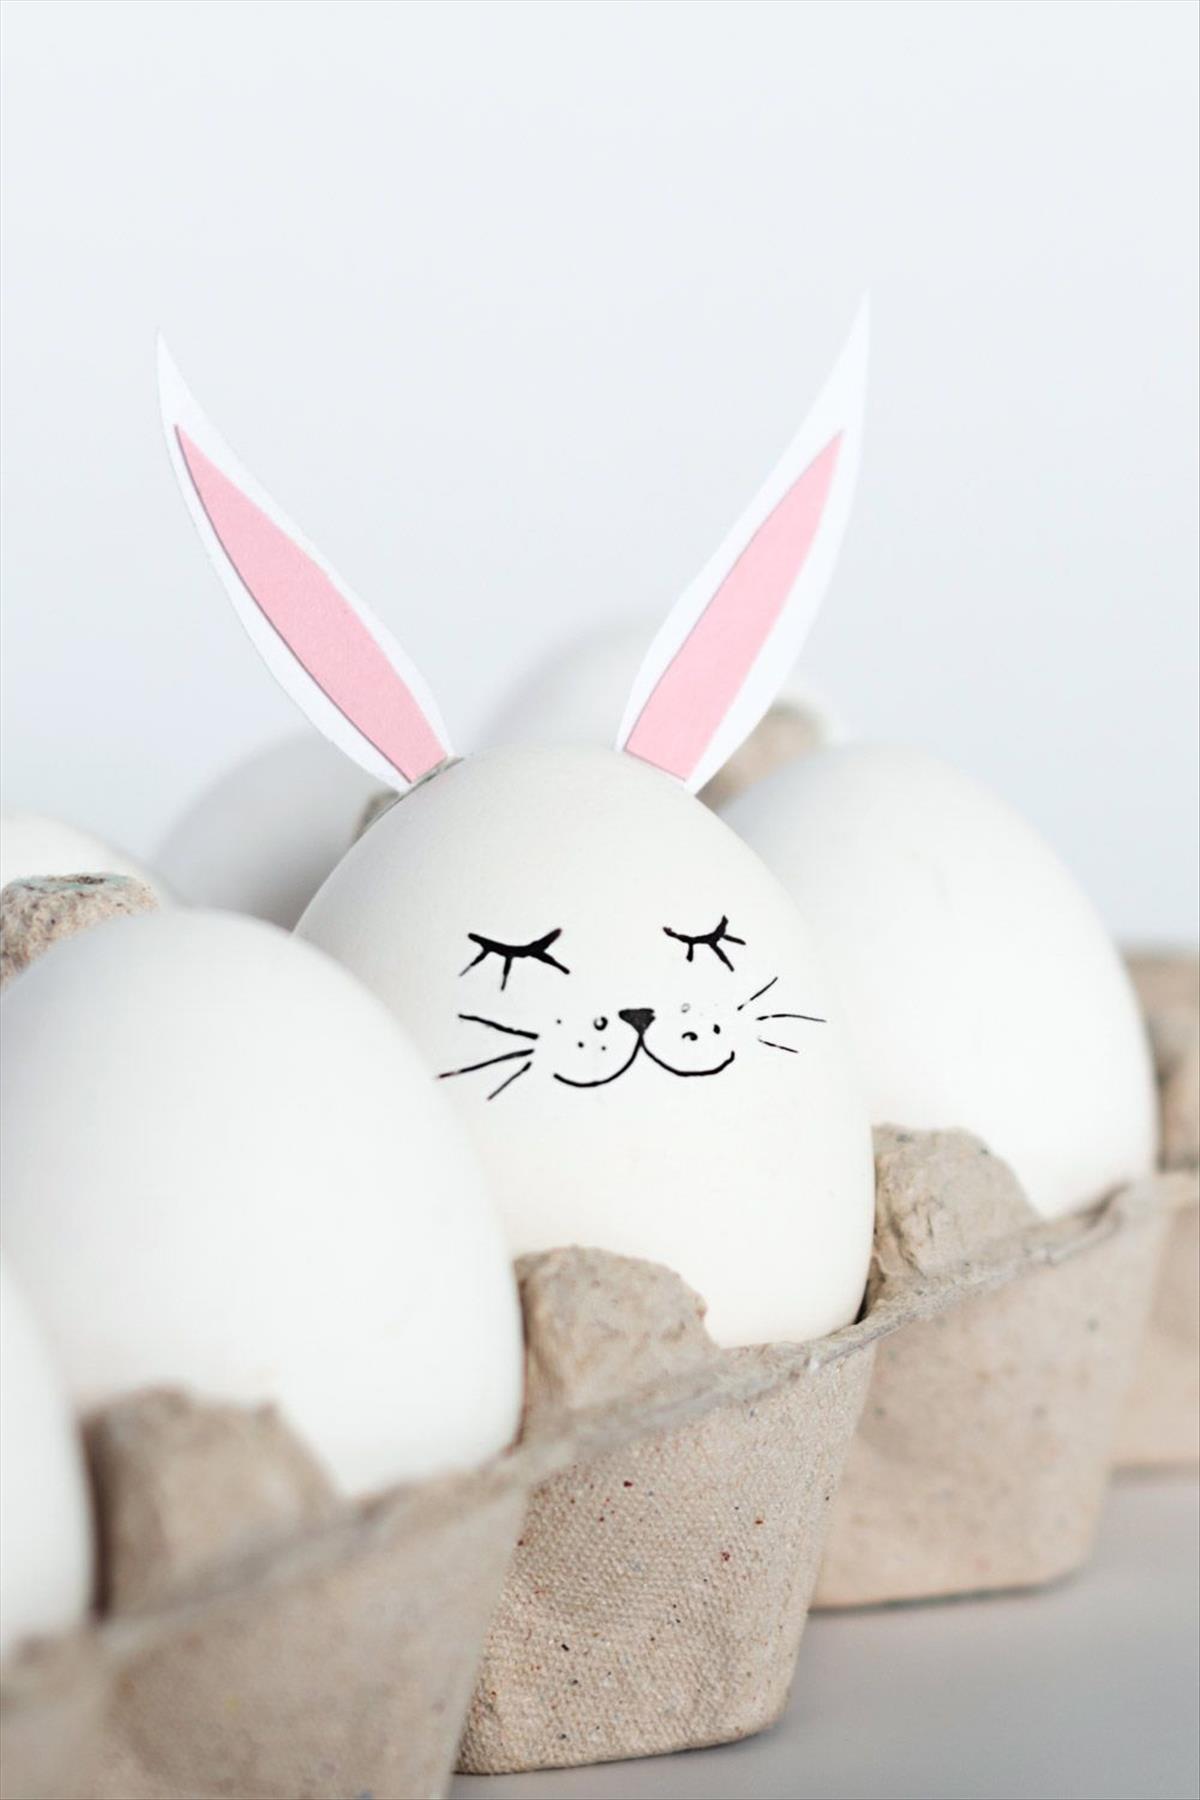 Modern Easter Egg Decoration Ideas Trending Now 2022